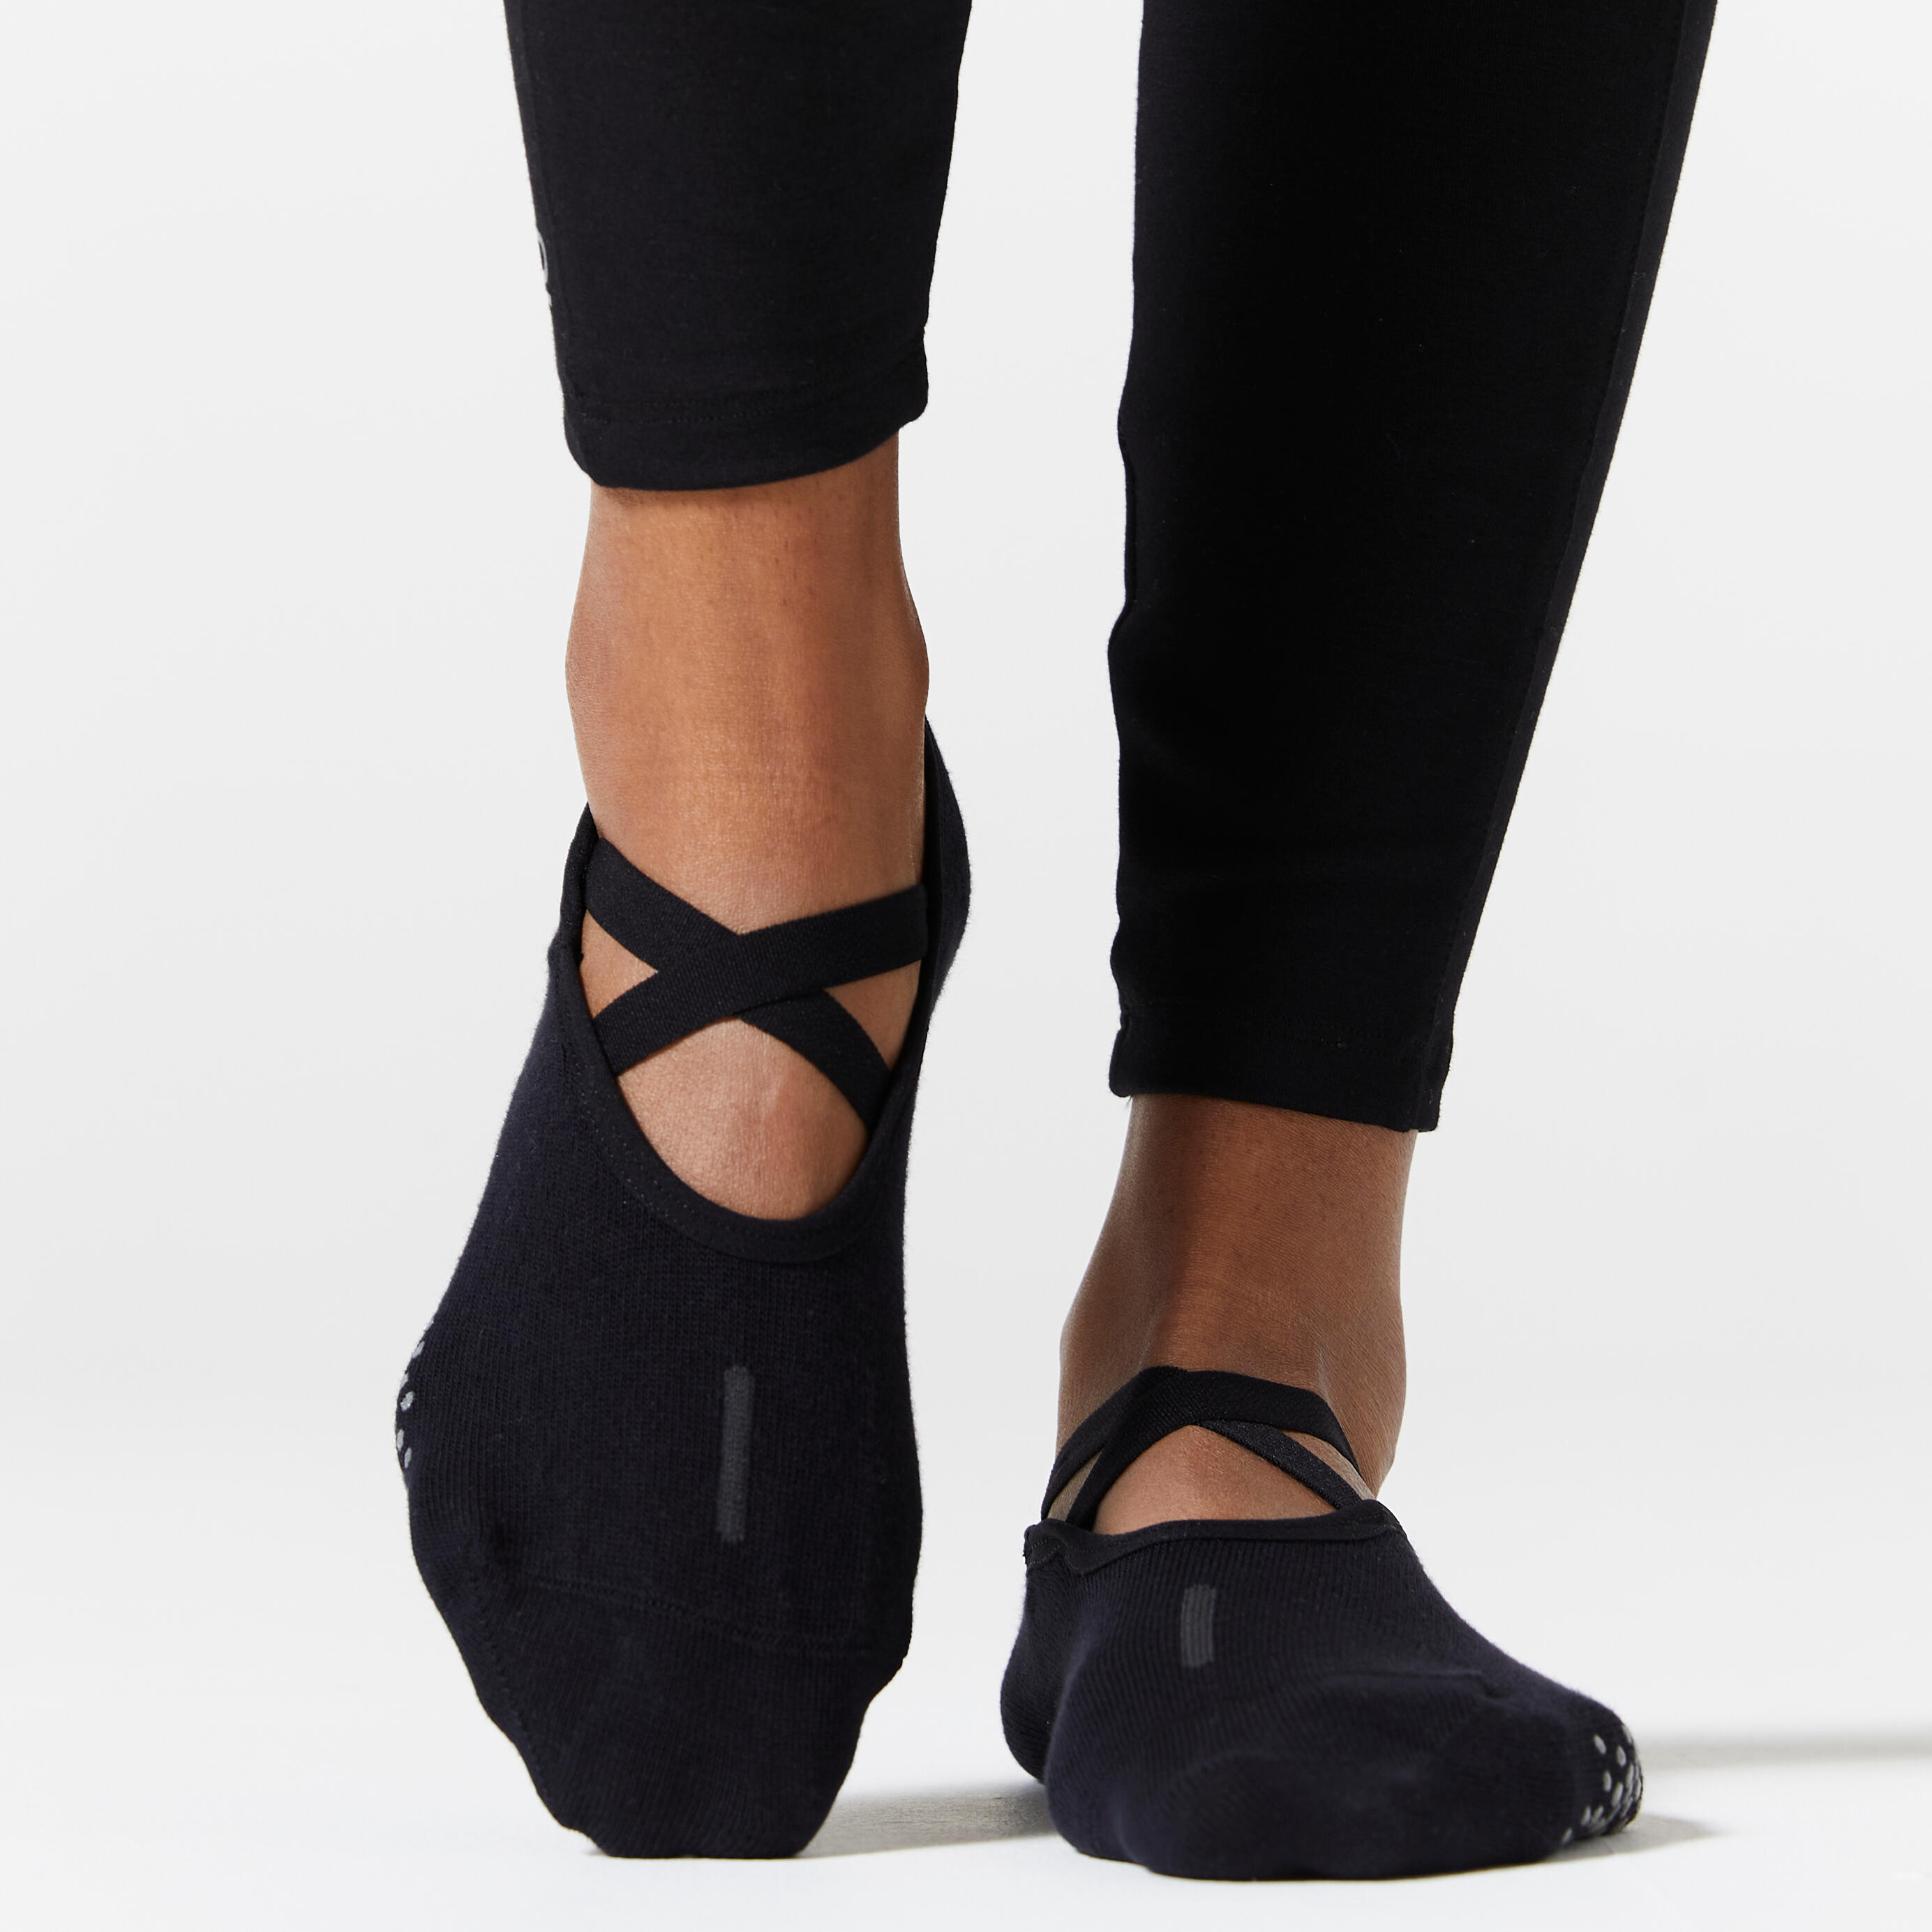 HAIRperone Women Non Slip Yoga Socks Toeless Non Skid Socks with